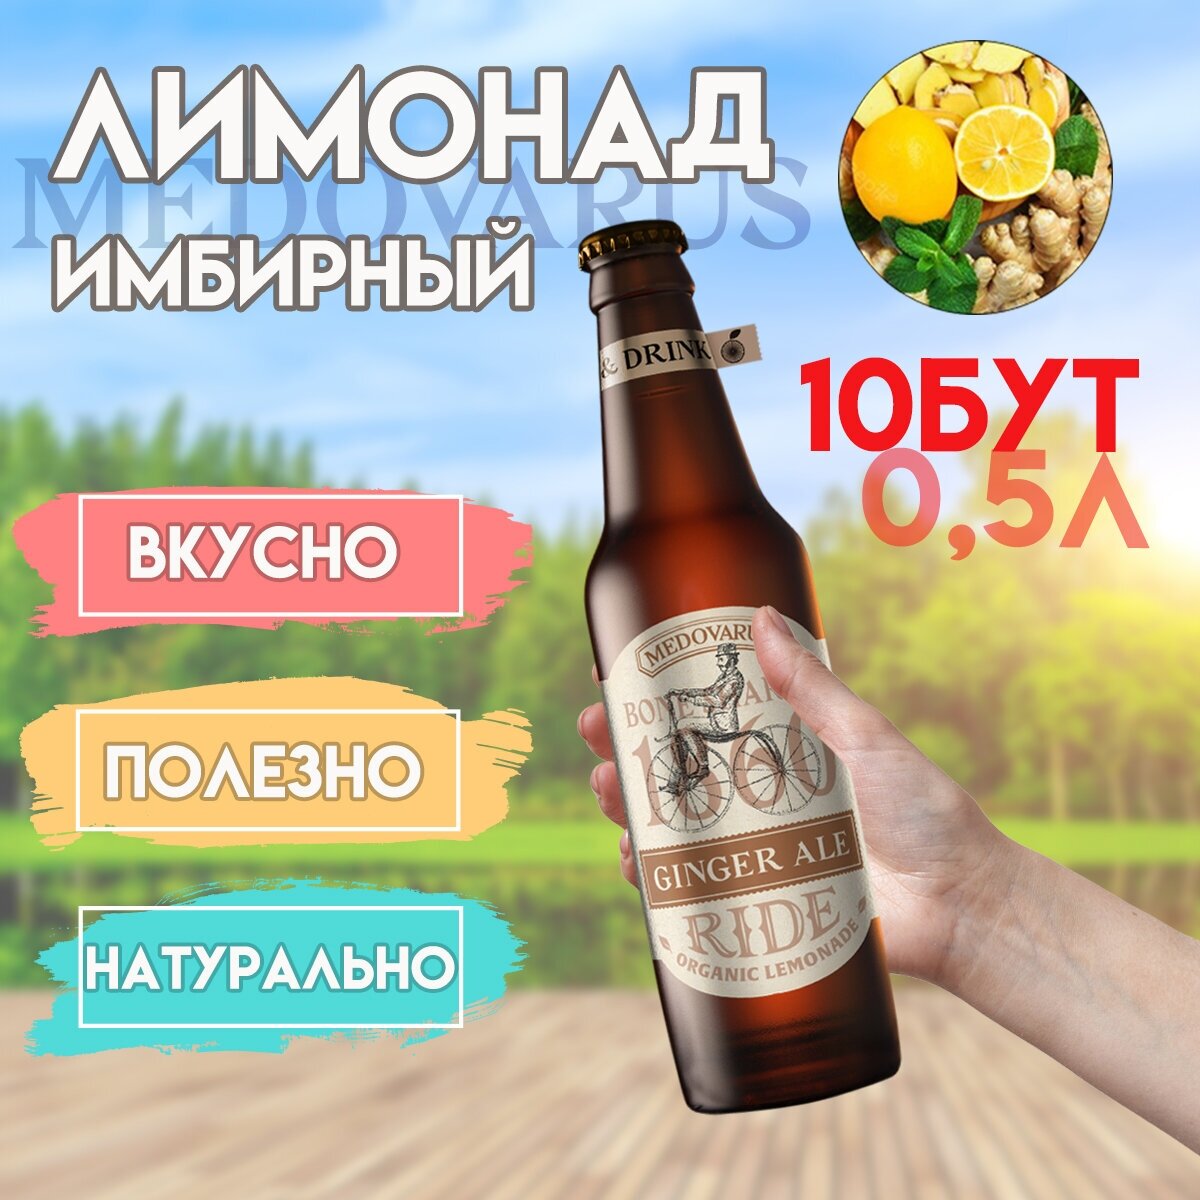 Лимонад "Имбирный" RIDE от Медоварус, 10бут по 0,5л